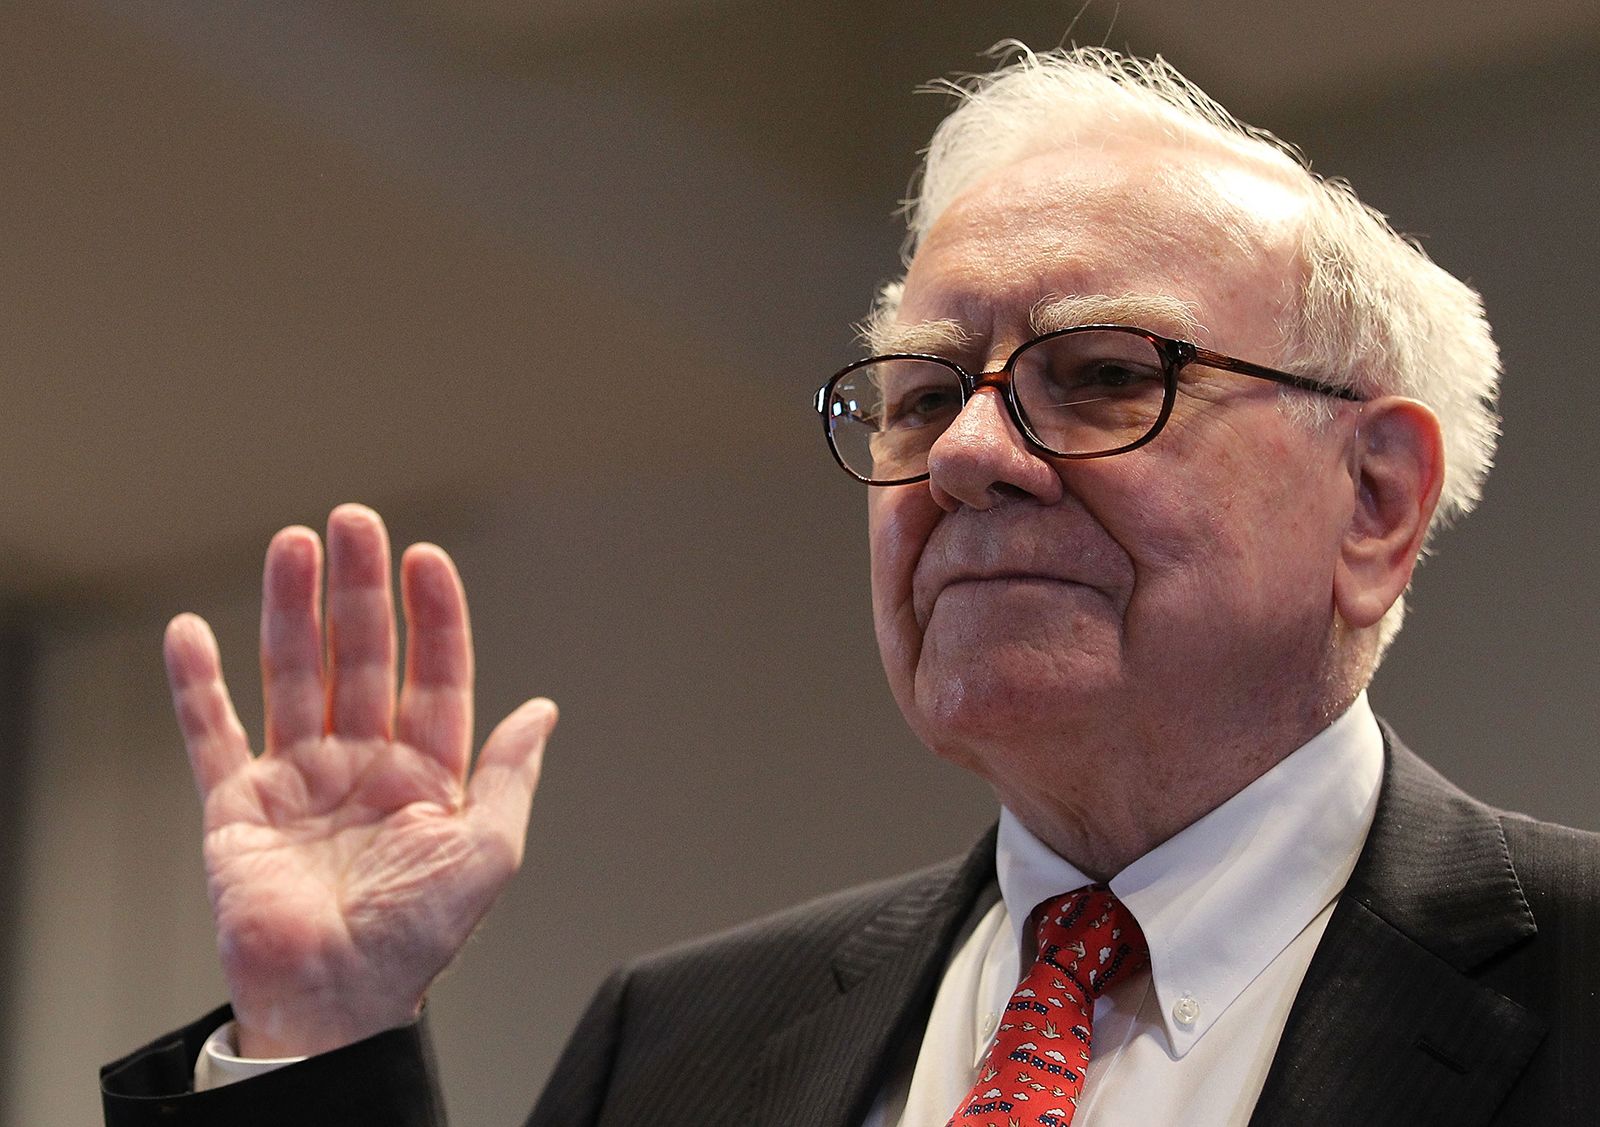 Tài sản của nhà đầu tư huyền thoại Warren Buffett thay đổi thế nào theo thời gian? - Ảnh 7.